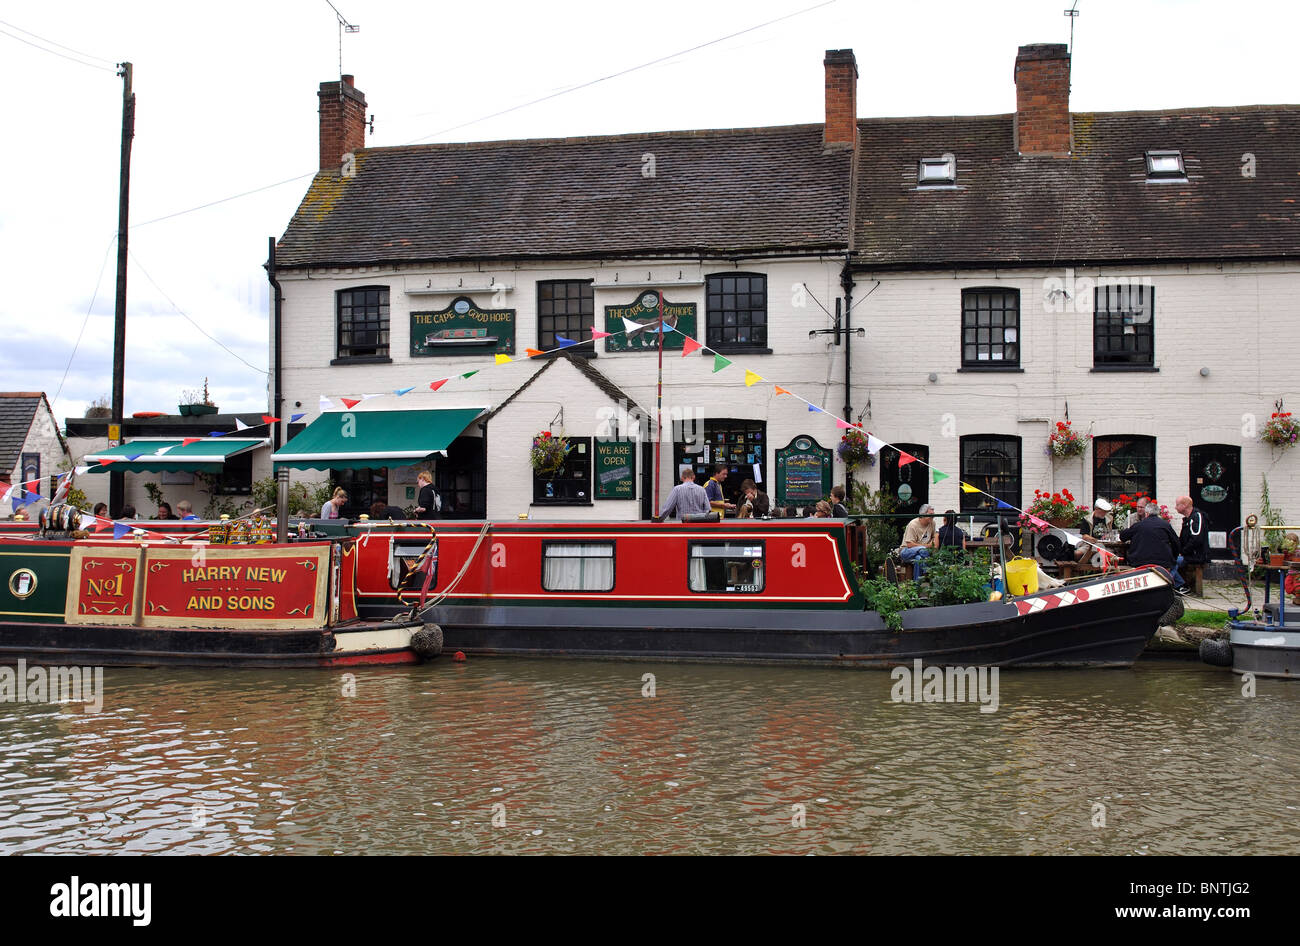 Il Capo di Buona Speranza pub accanto al Grand Union Canal, Warwick, Regno Unito Foto Stock